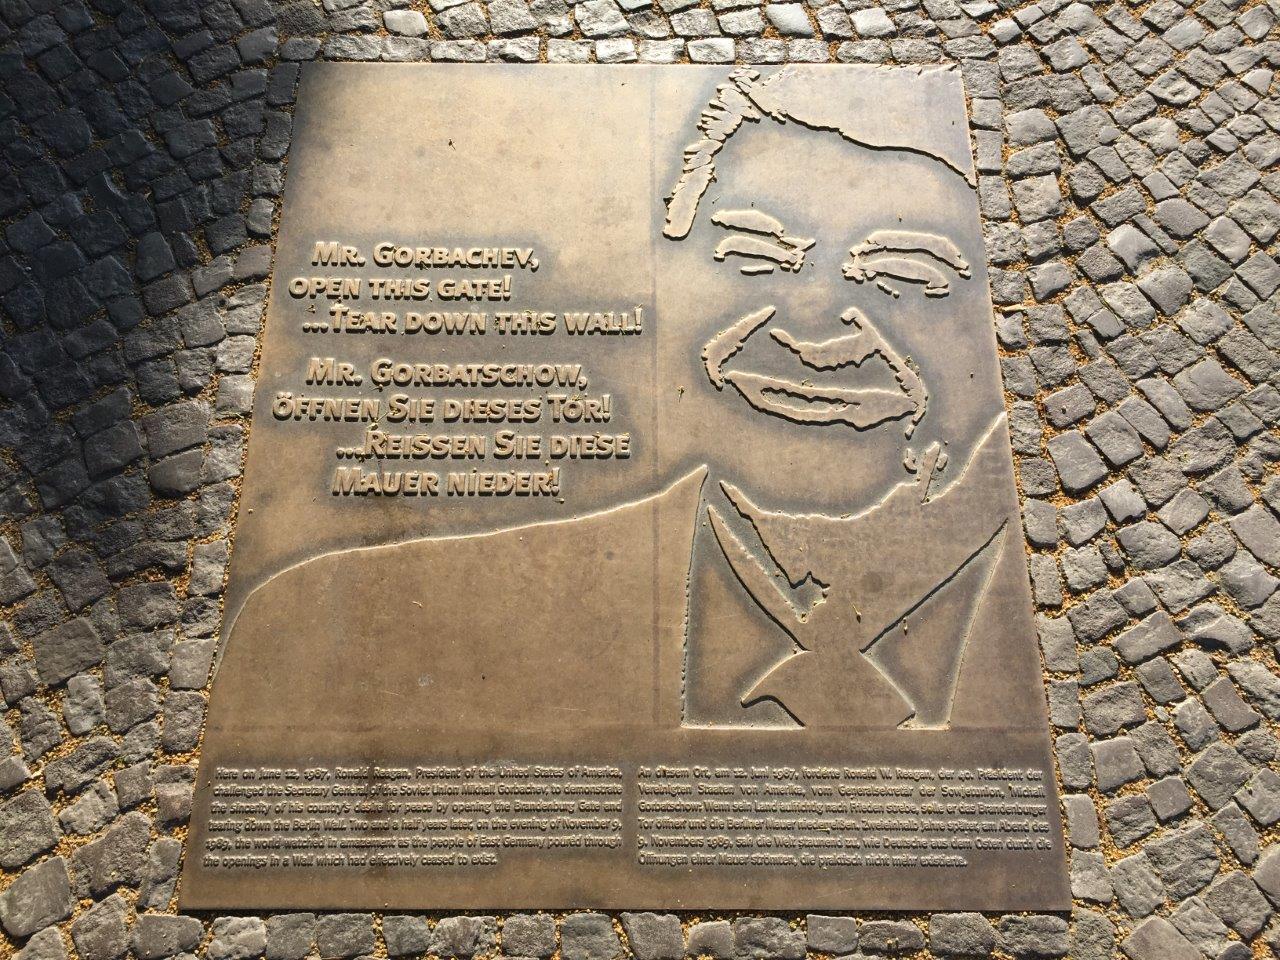 Ronald Reagan historical marker in Berlin